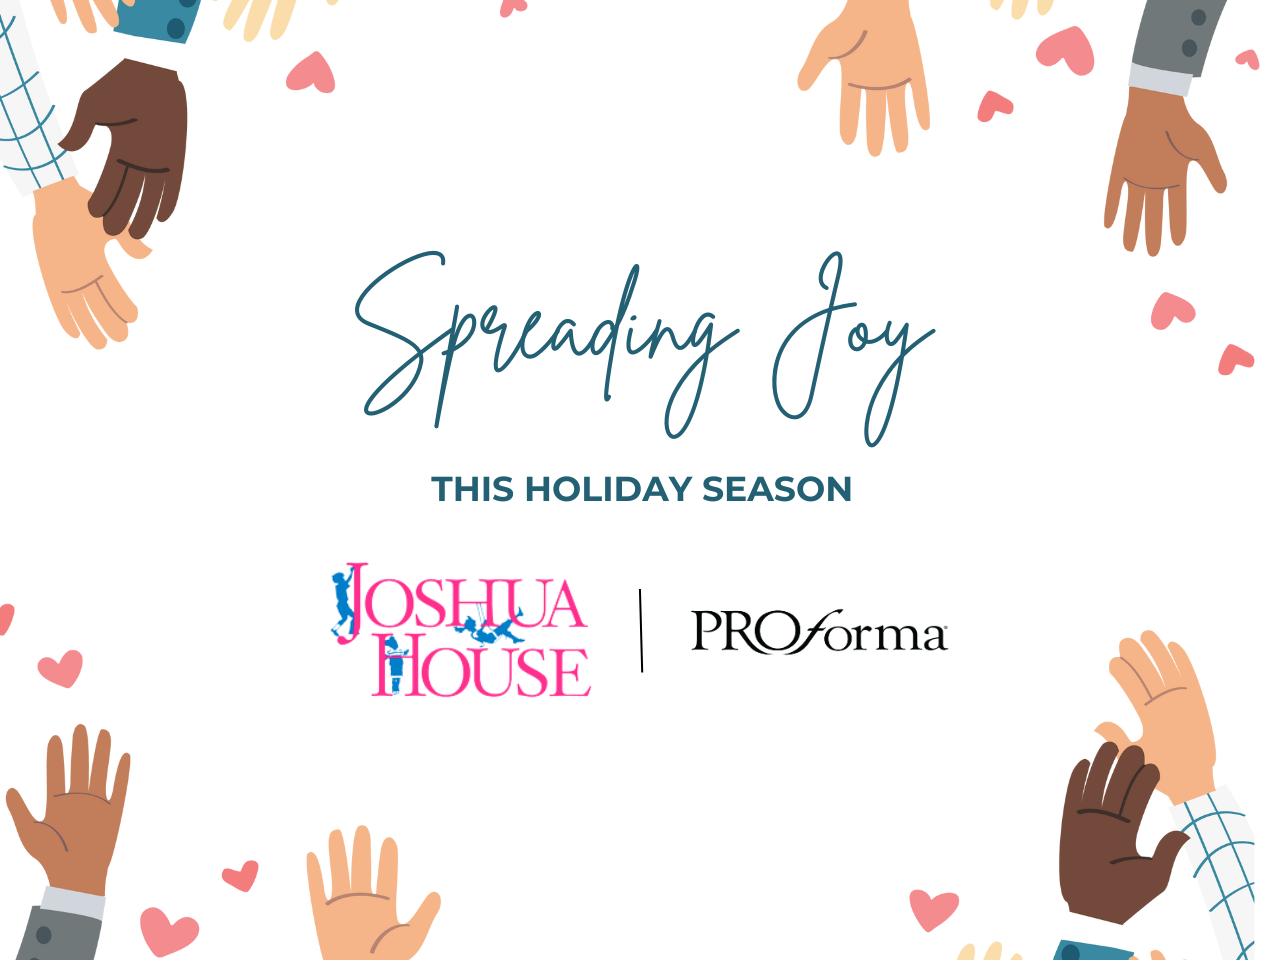 Spreading Joy this Season with Joshua House